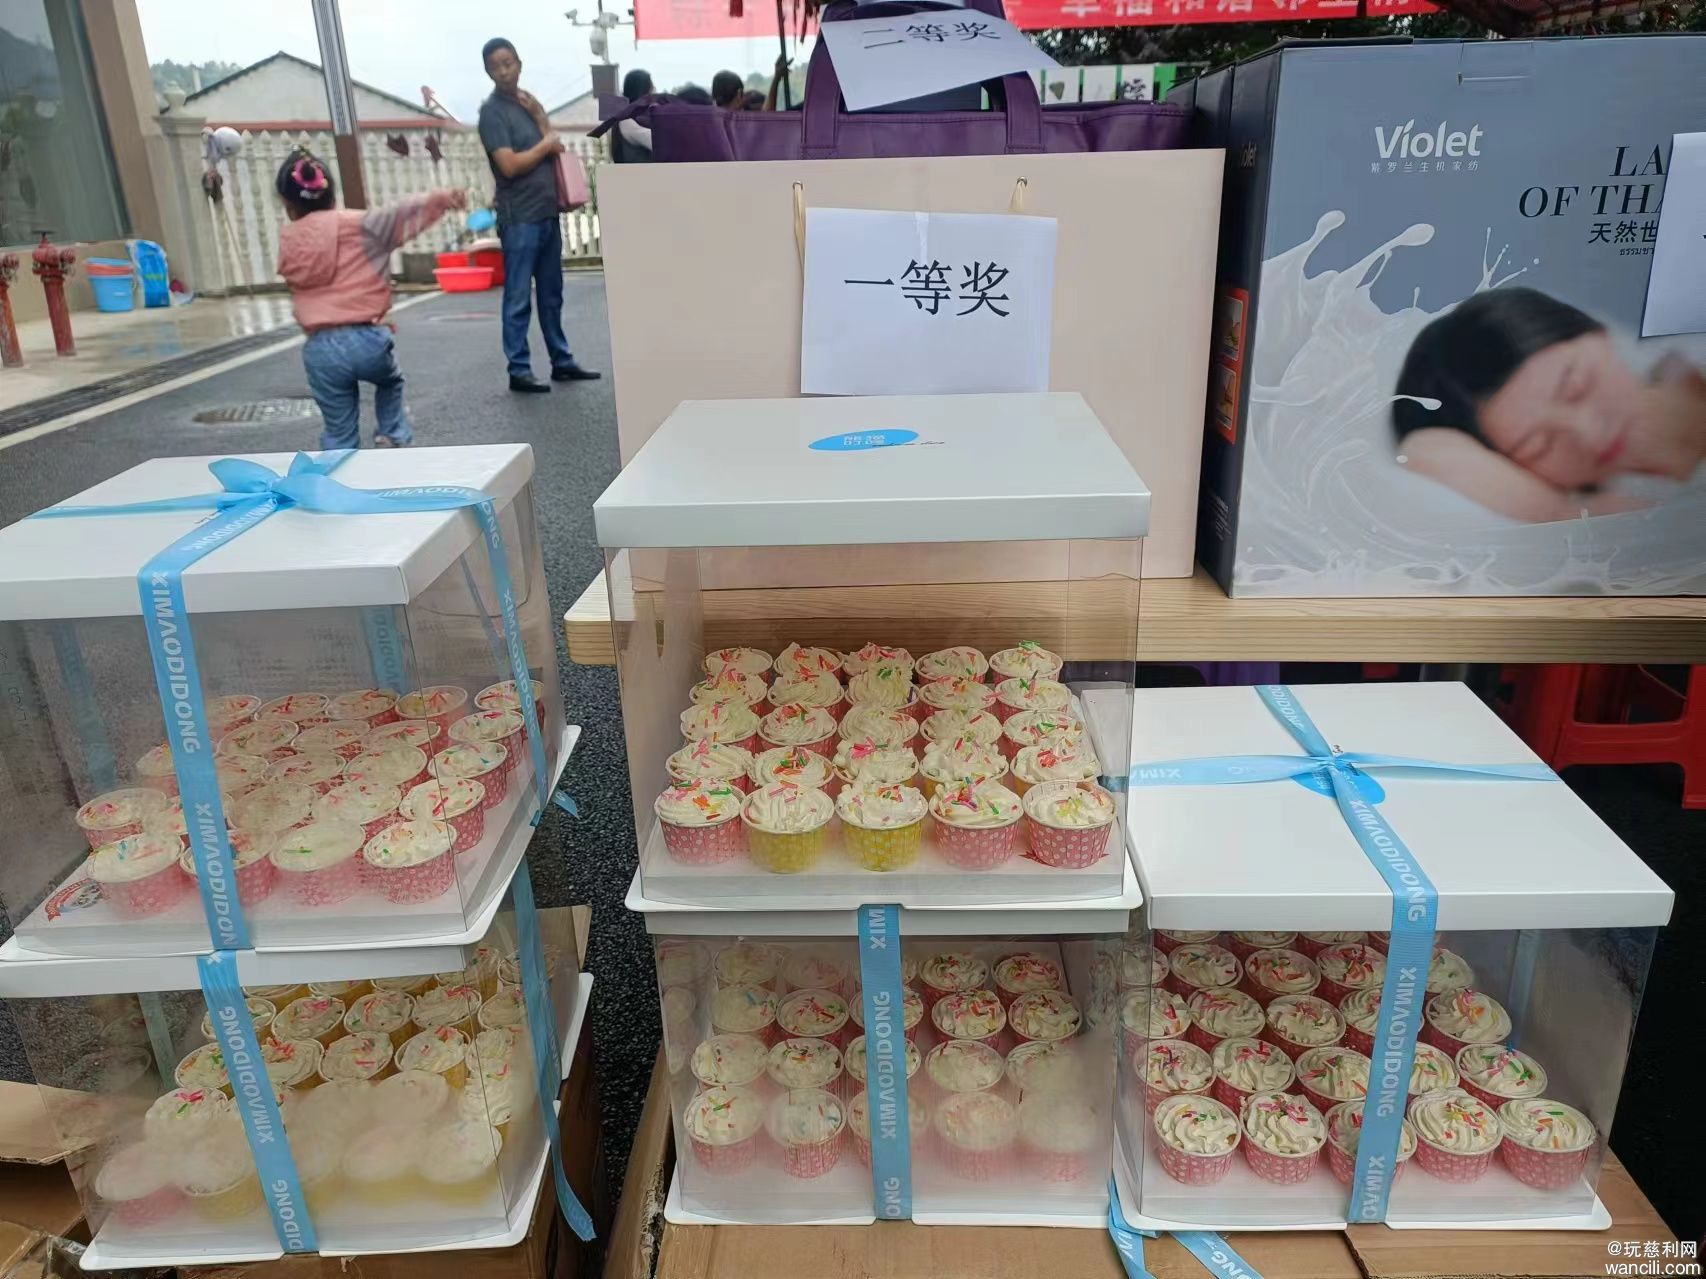 慈利县居安物业在温泉华府小区举办端午节包粽子比赛